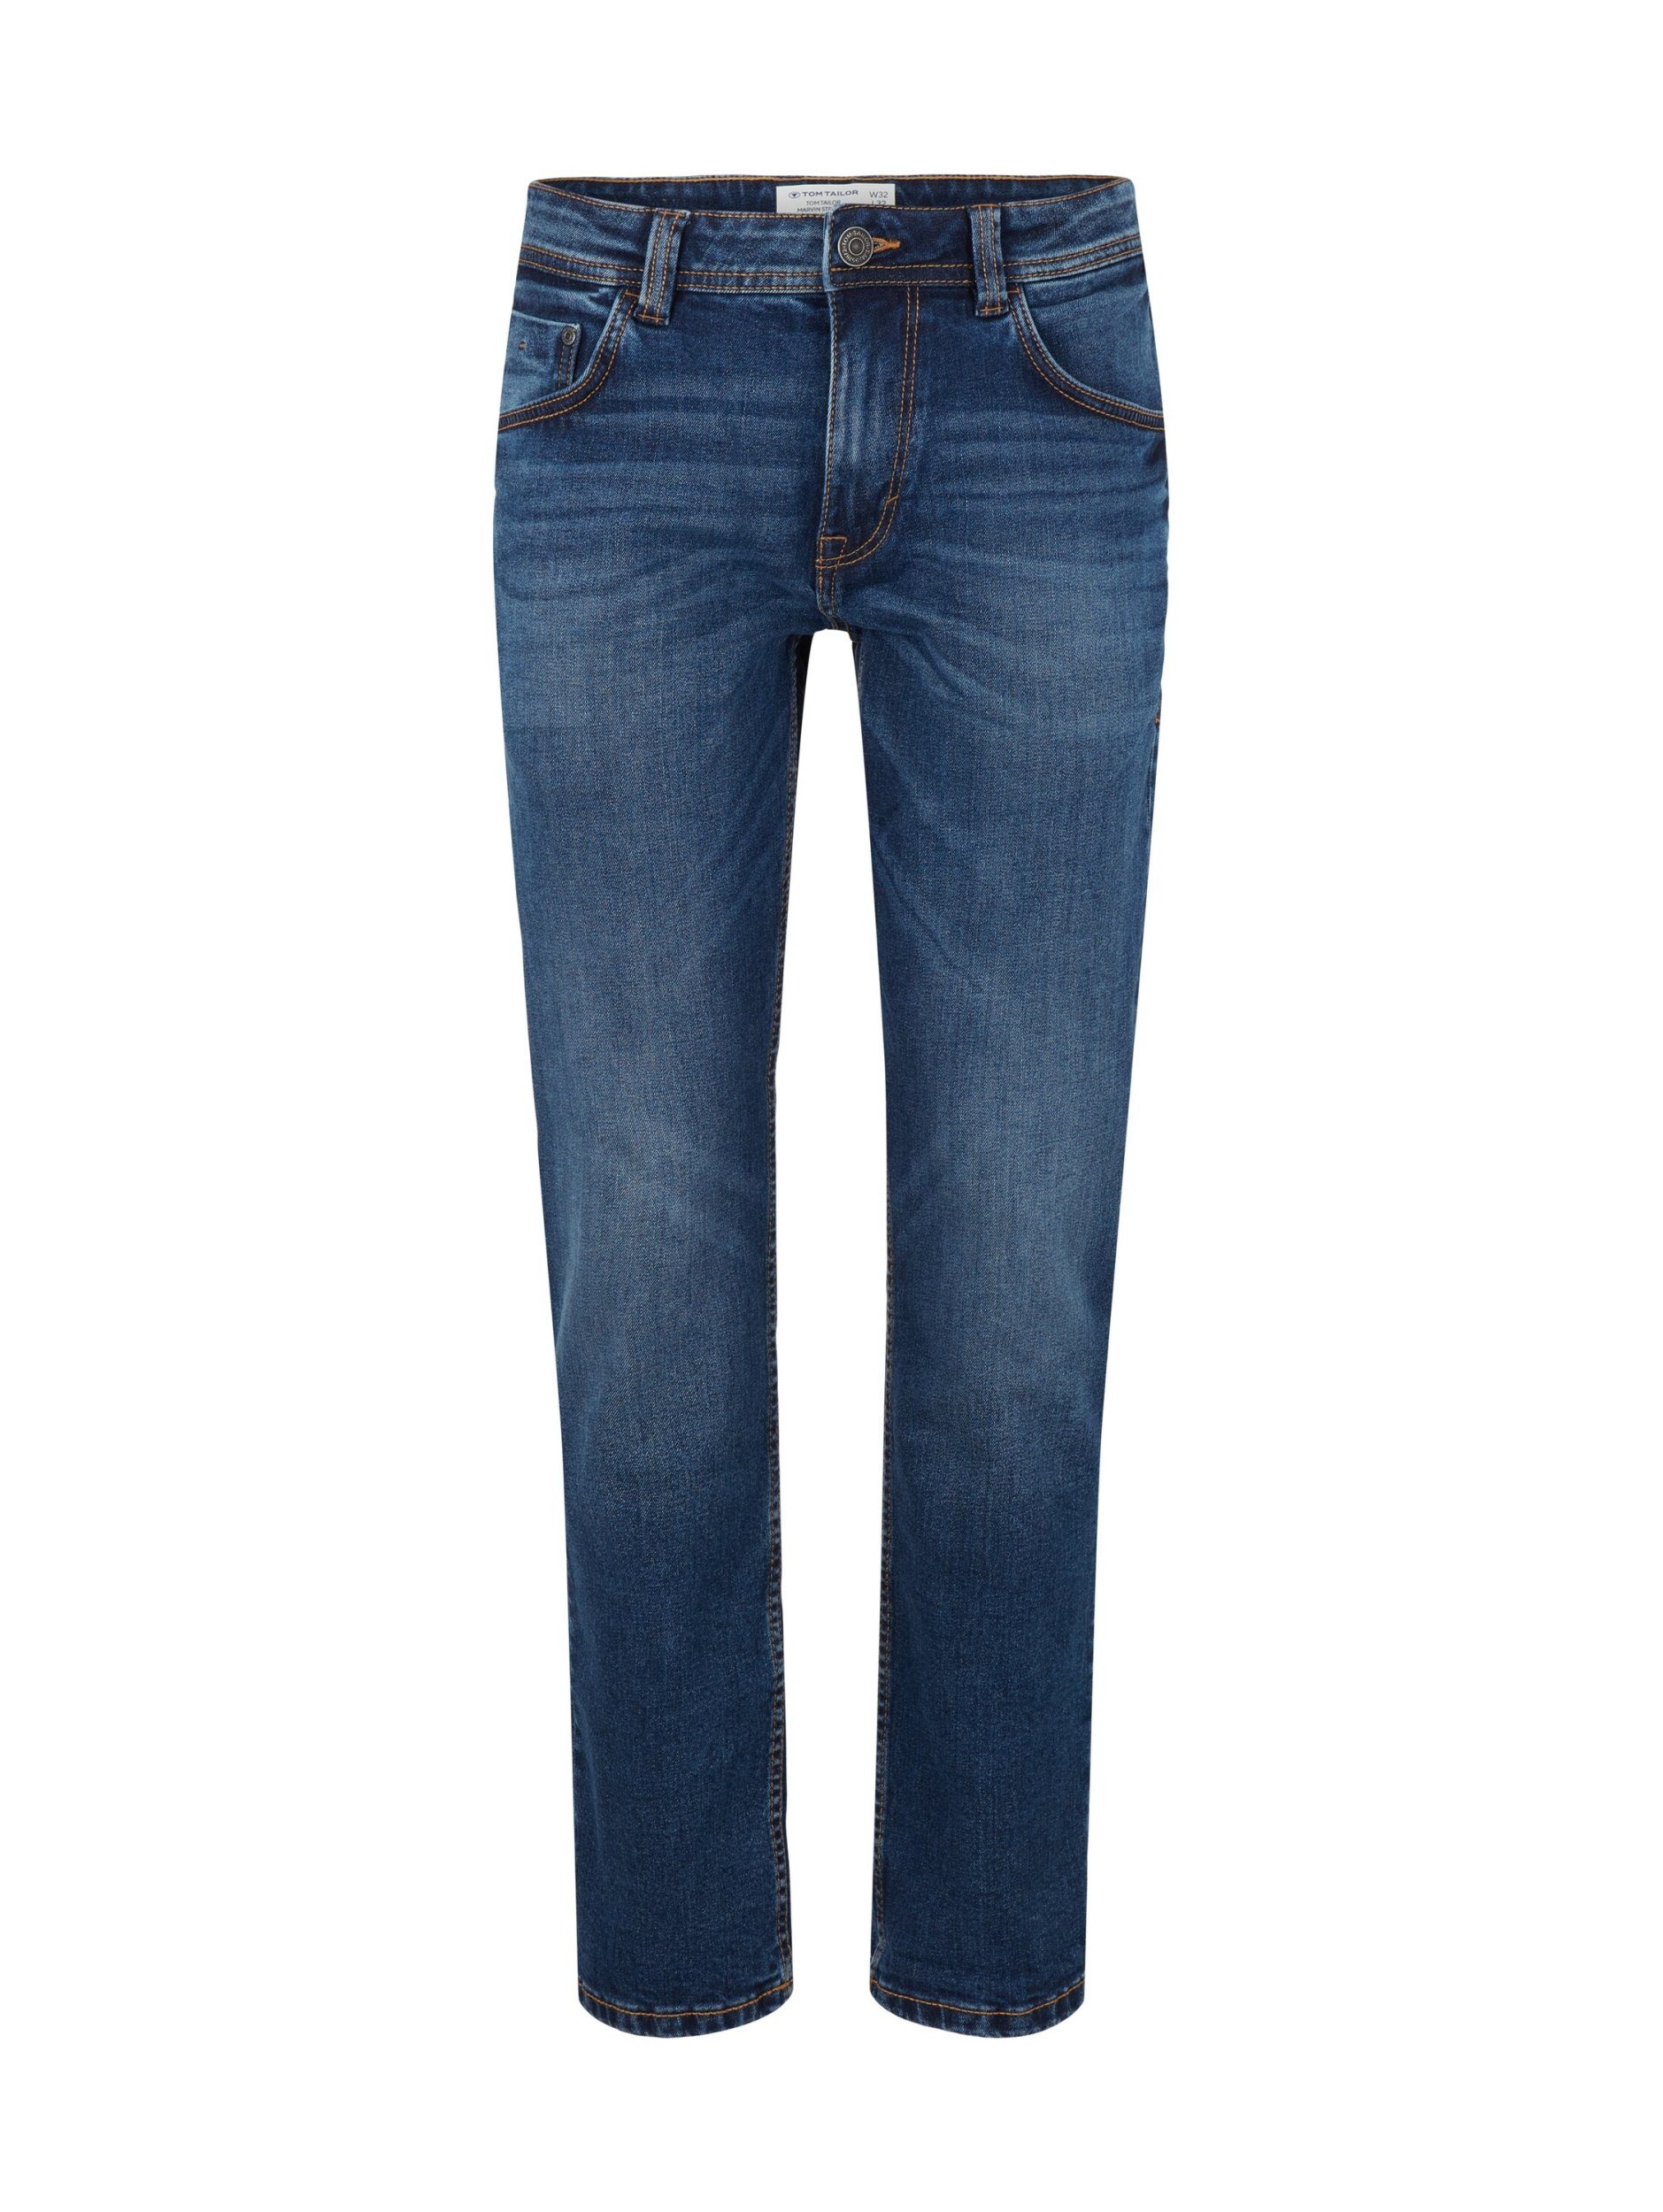 TOM TAILOR 5-Pocket-Jeans Tom Tailor Marvin blau